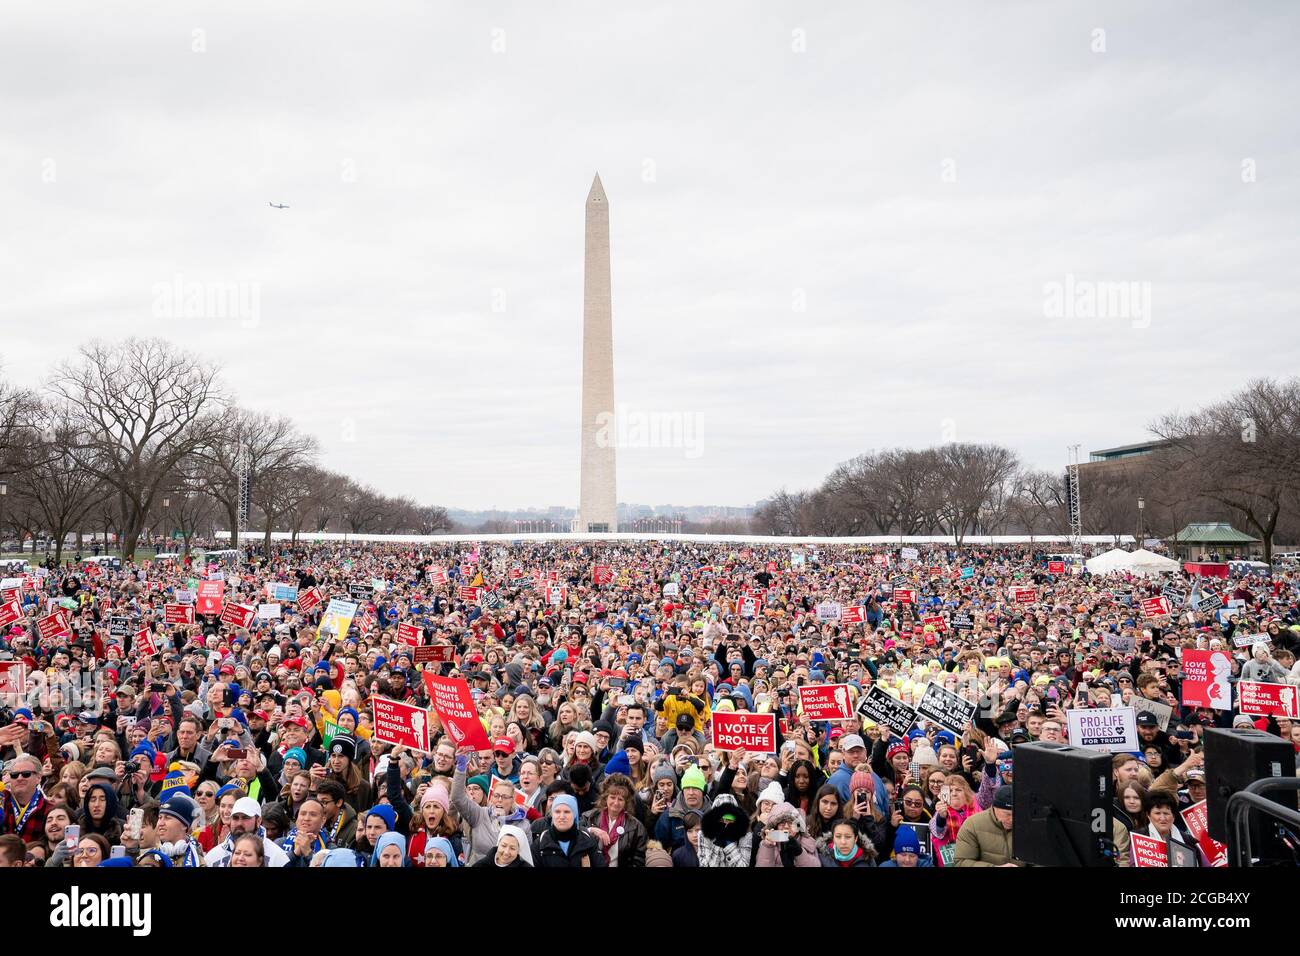 Rassemblement de mars pour la vie le vendredi 24 janvier 2020, au National Mall de Washington, D.C. où le président Donald Trump s'est adressé à la foule massive. (ÉTATS-UNIS) Banque D'Images